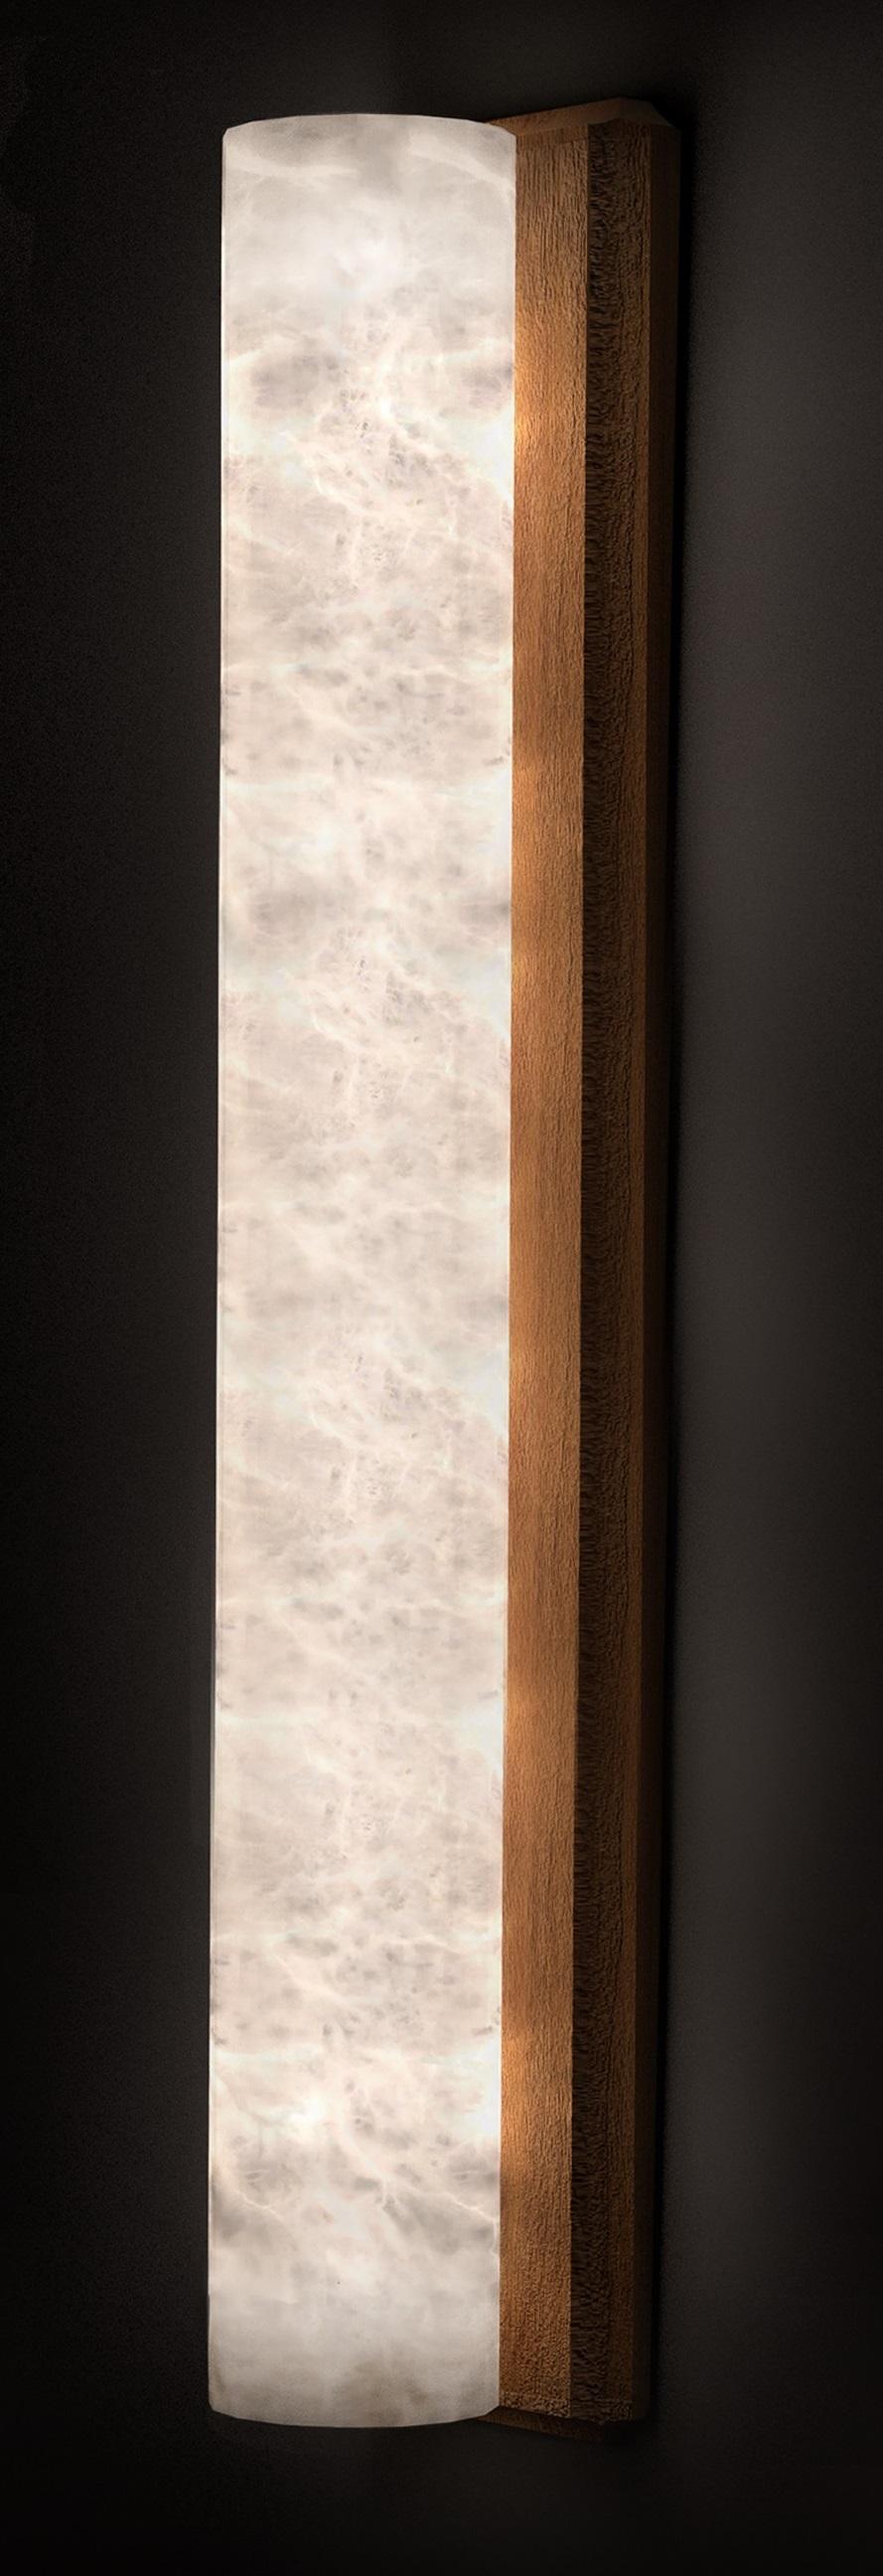 Kendō 2 Große Iroko Holzapplikation von Alabastro Italiano
Abmessungen: Ø 14 x H 74 cm.
MATERIALIEN: Weißer Alabaster und Iroko-Holz.

Erhältlich in verschiedenen Ausführungen: Iroko-Holz und Mattschwarz. Auch in verschiedenen Größen erhältlich.